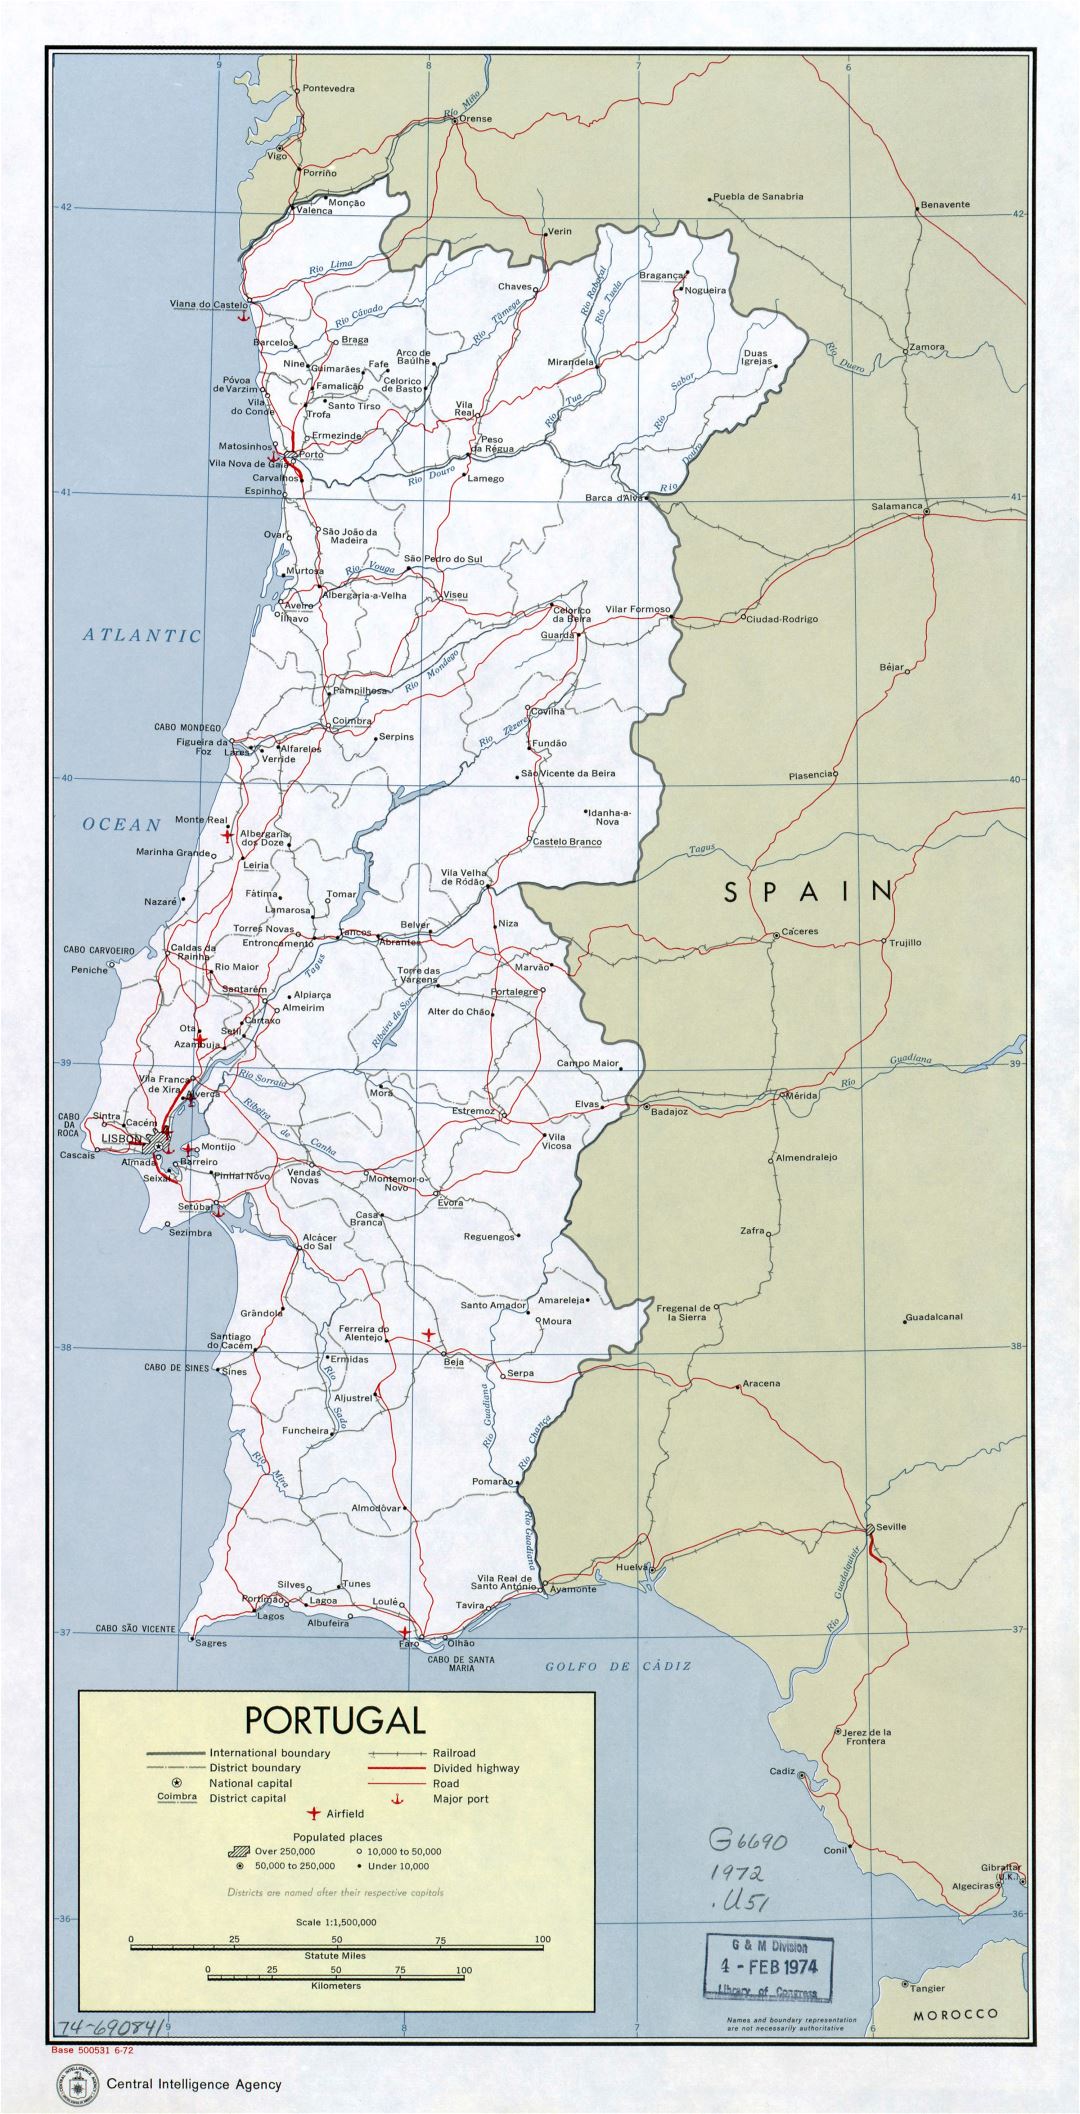 Большая детальная политическая и административная карта Португалии с дорогами, железными дорогами, крупными городами, аэропортами и портами - 1972